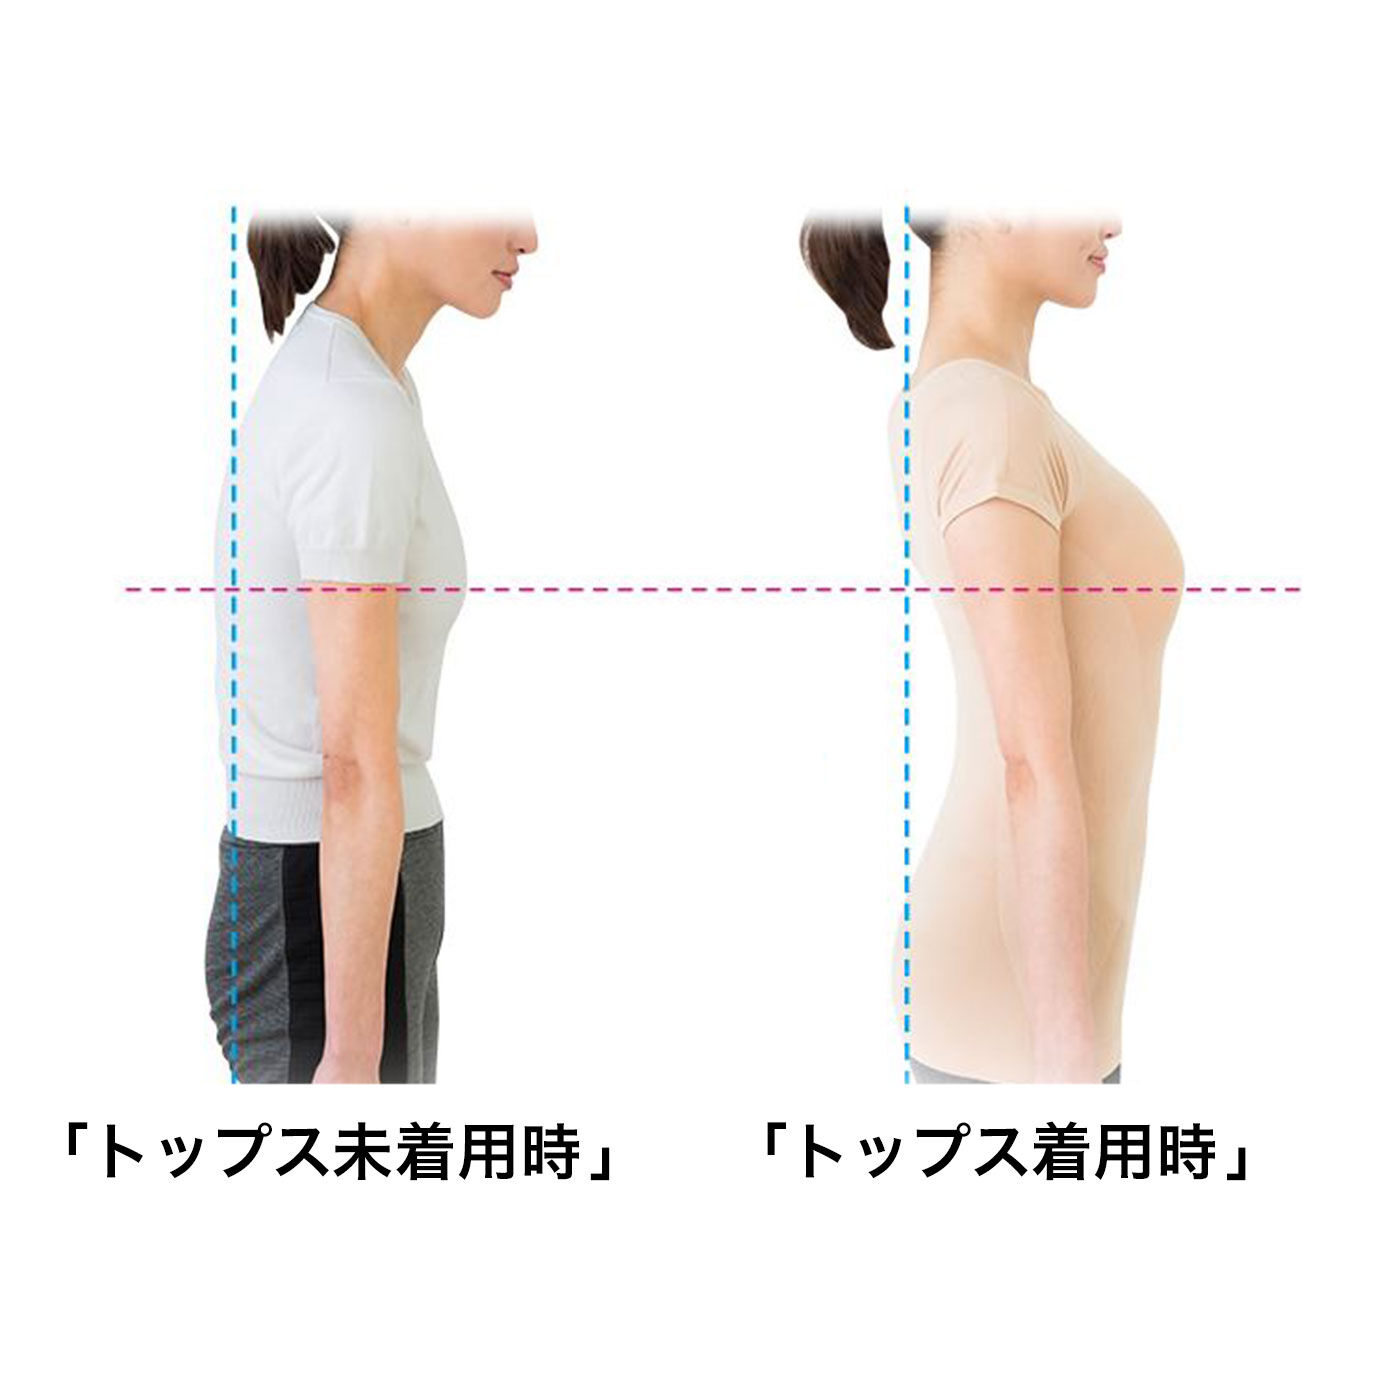 flufeel|Dr.小倉の肩甲骨姿勢トップス〈ベージュ〉|背筋がシャキ！とすれば、バストトップも上がって、若々しい印象に。※使用感・効果には個人差があります。